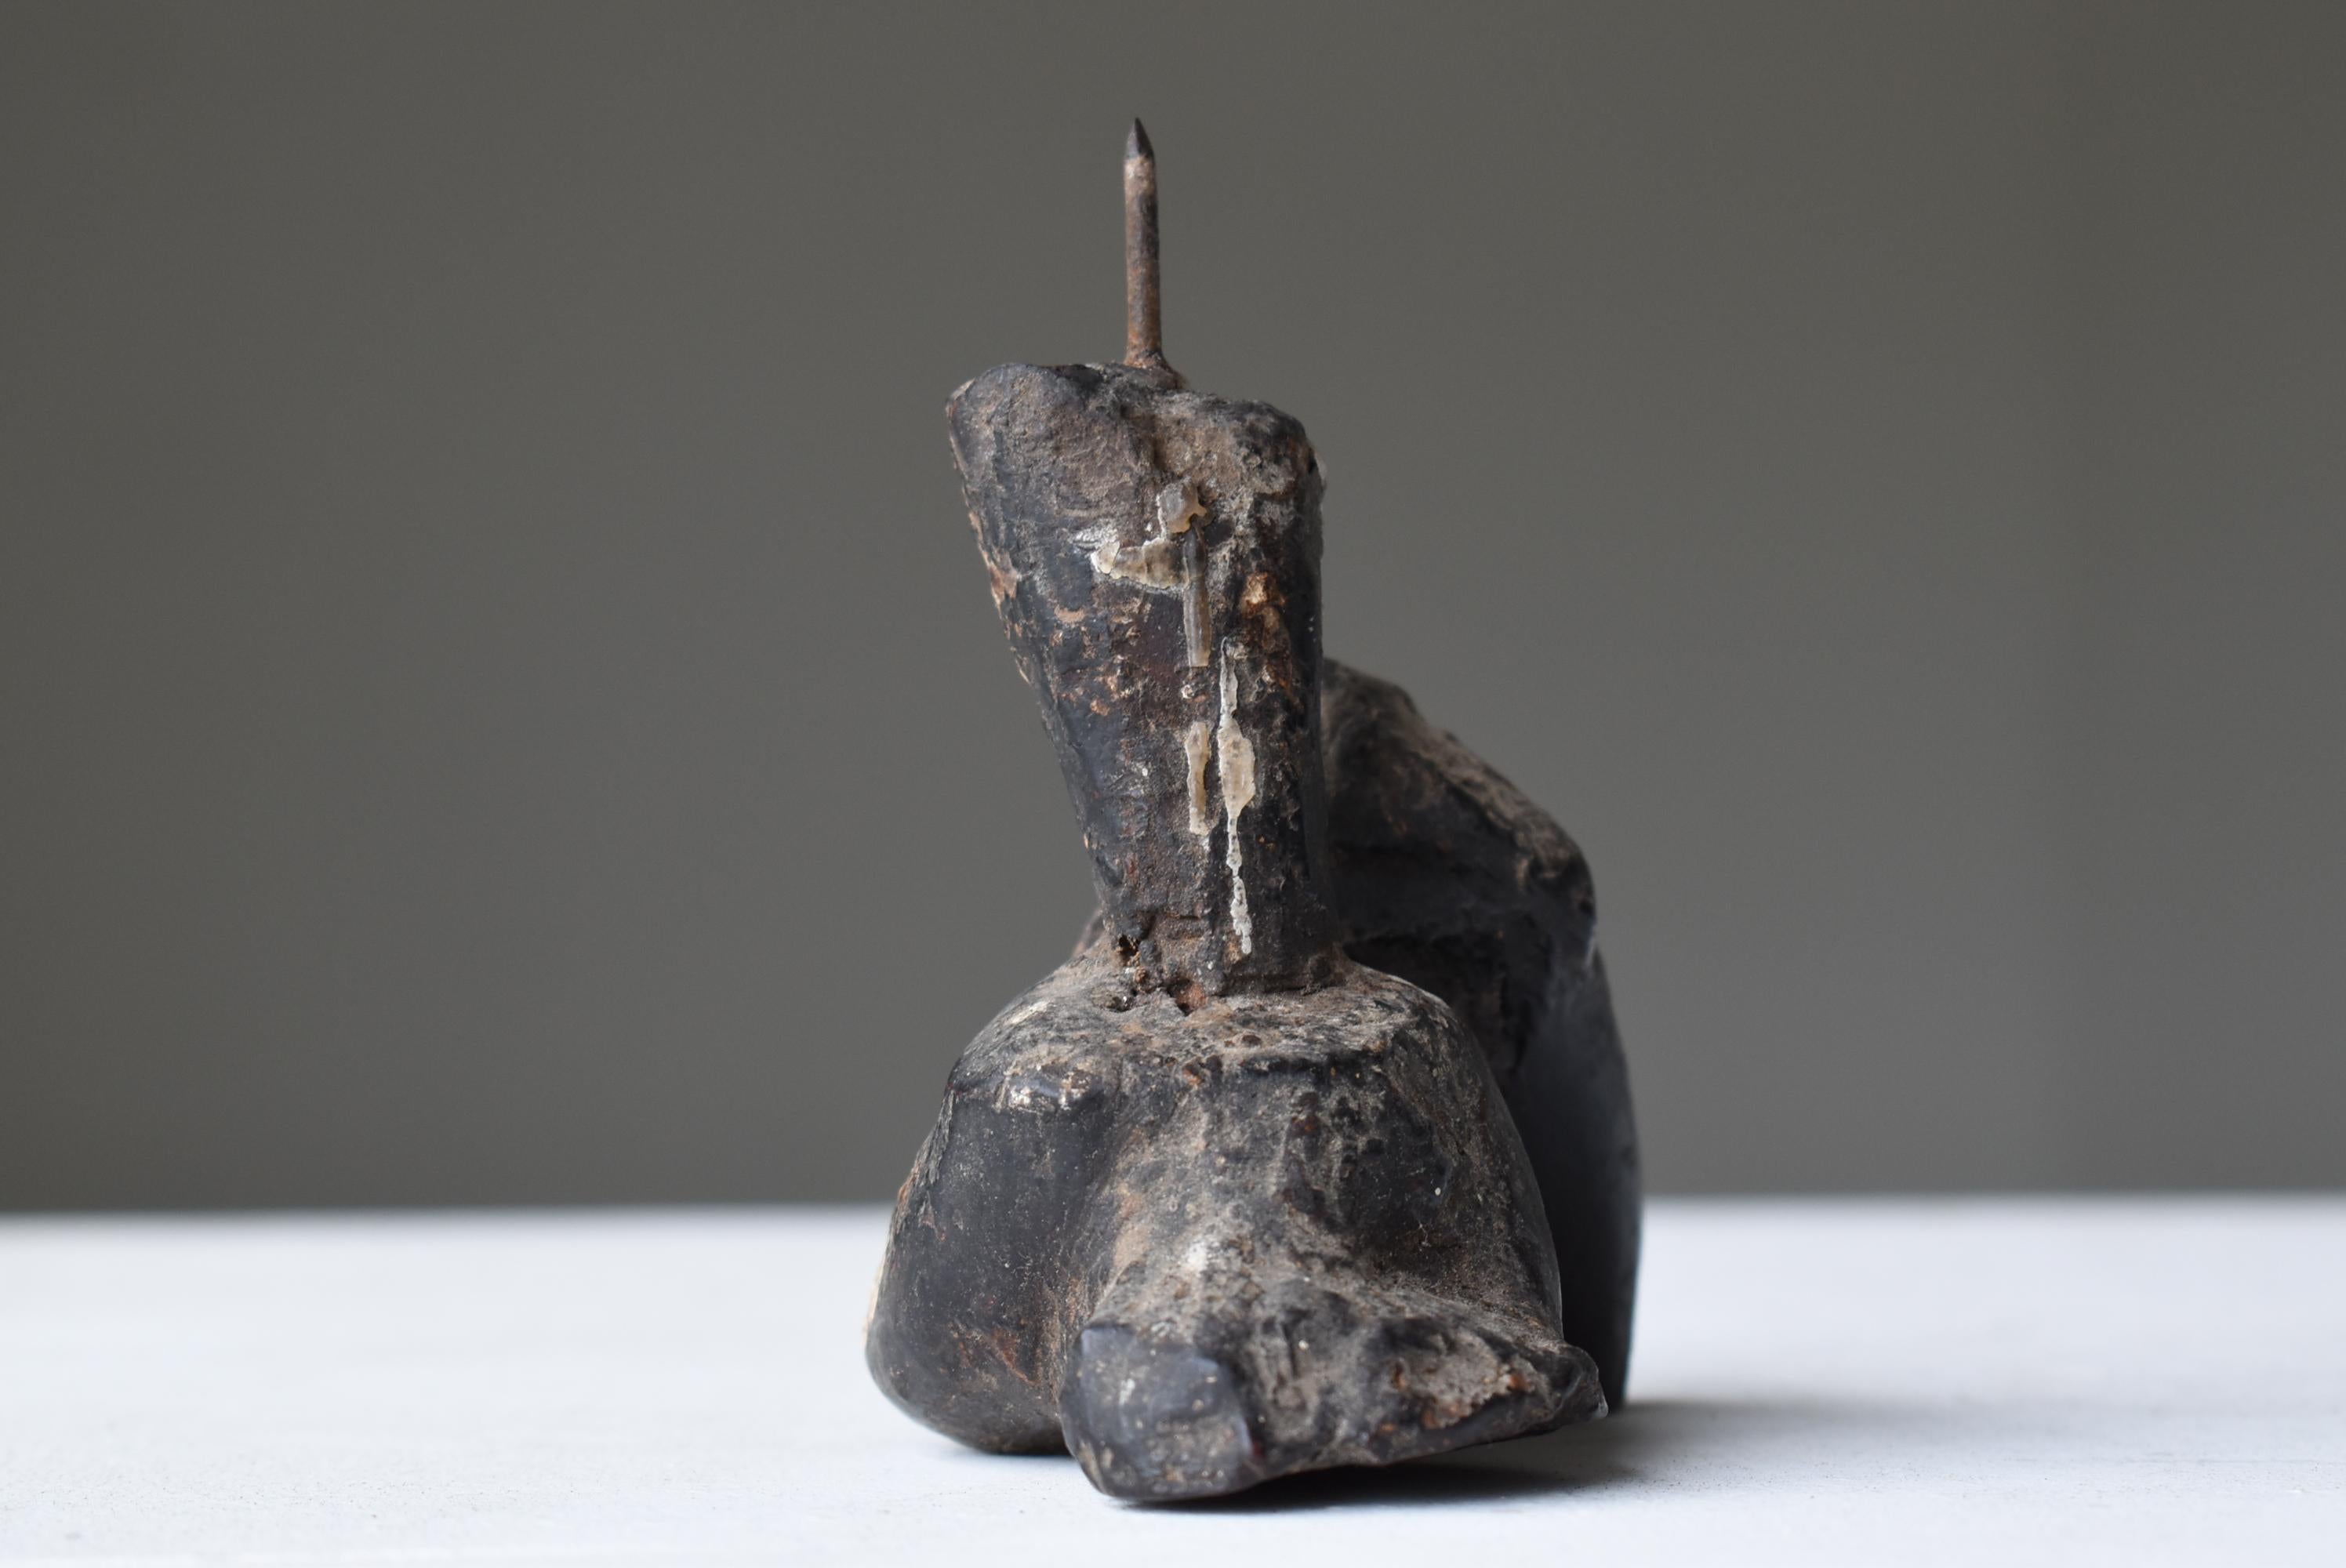 Cedar Japanese Antique Candle Stick 1800s-1860s/Mingei Wabi-Sabi Object Figurine